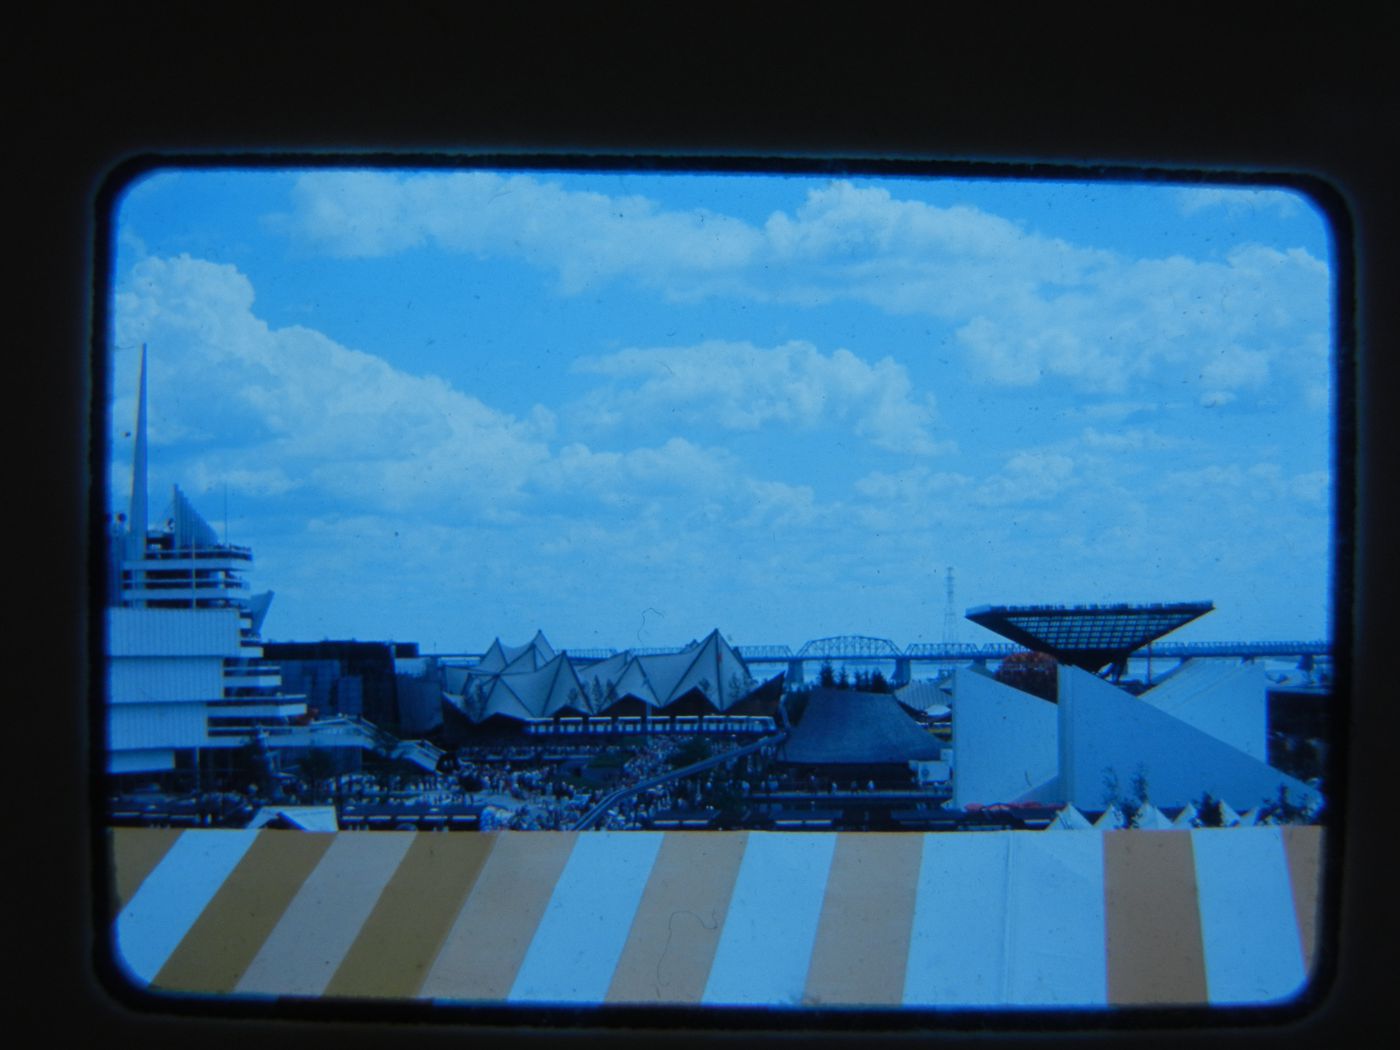 Partial view of the Île Notre-Dame site, Expo 67, Montréal, Québec